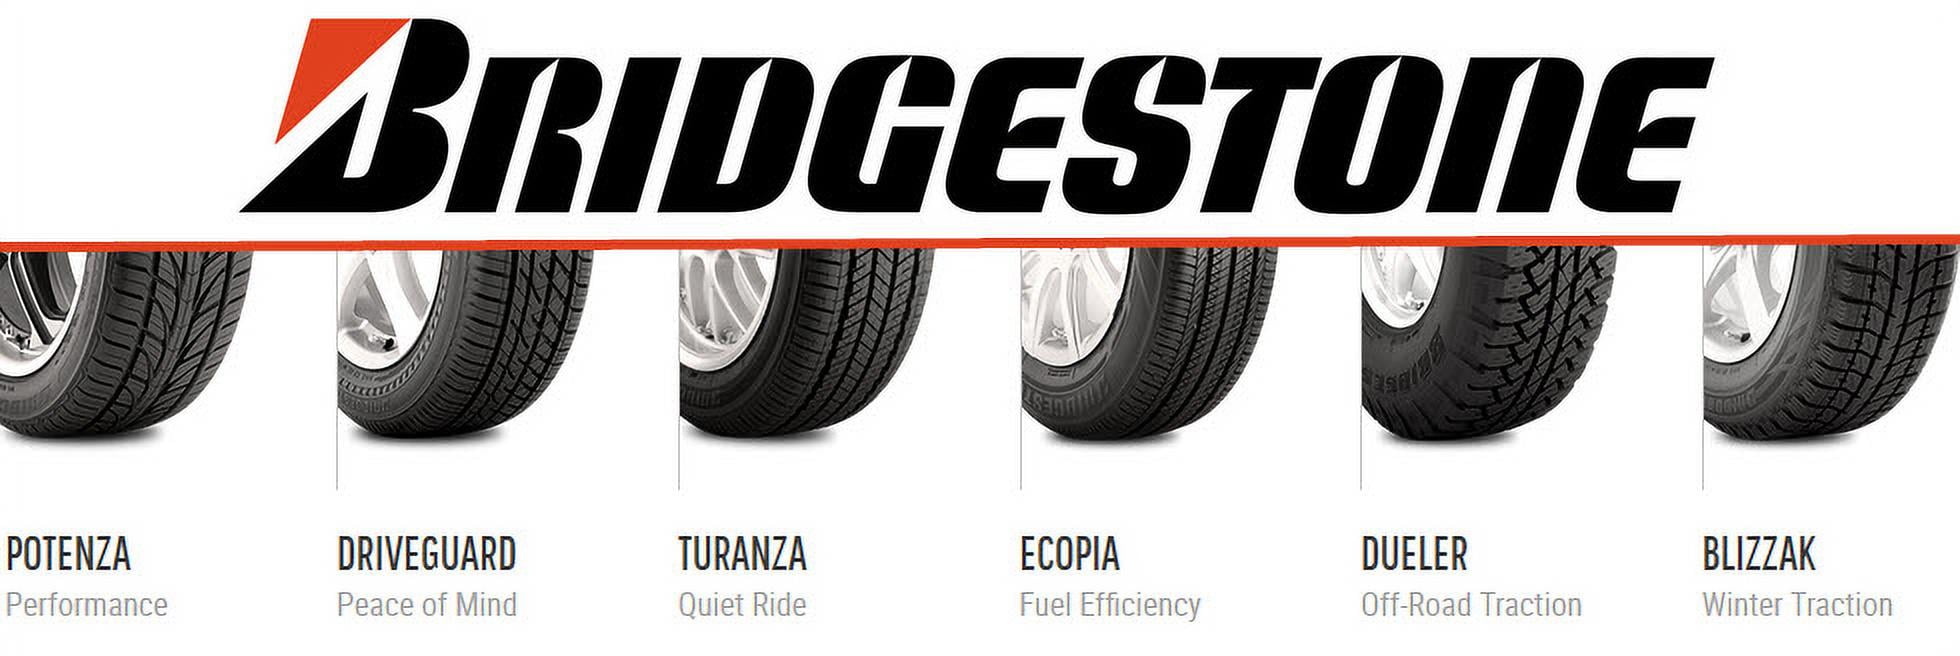 Bridgestone tire evolves in COVID-19 pandemic | Rubber News